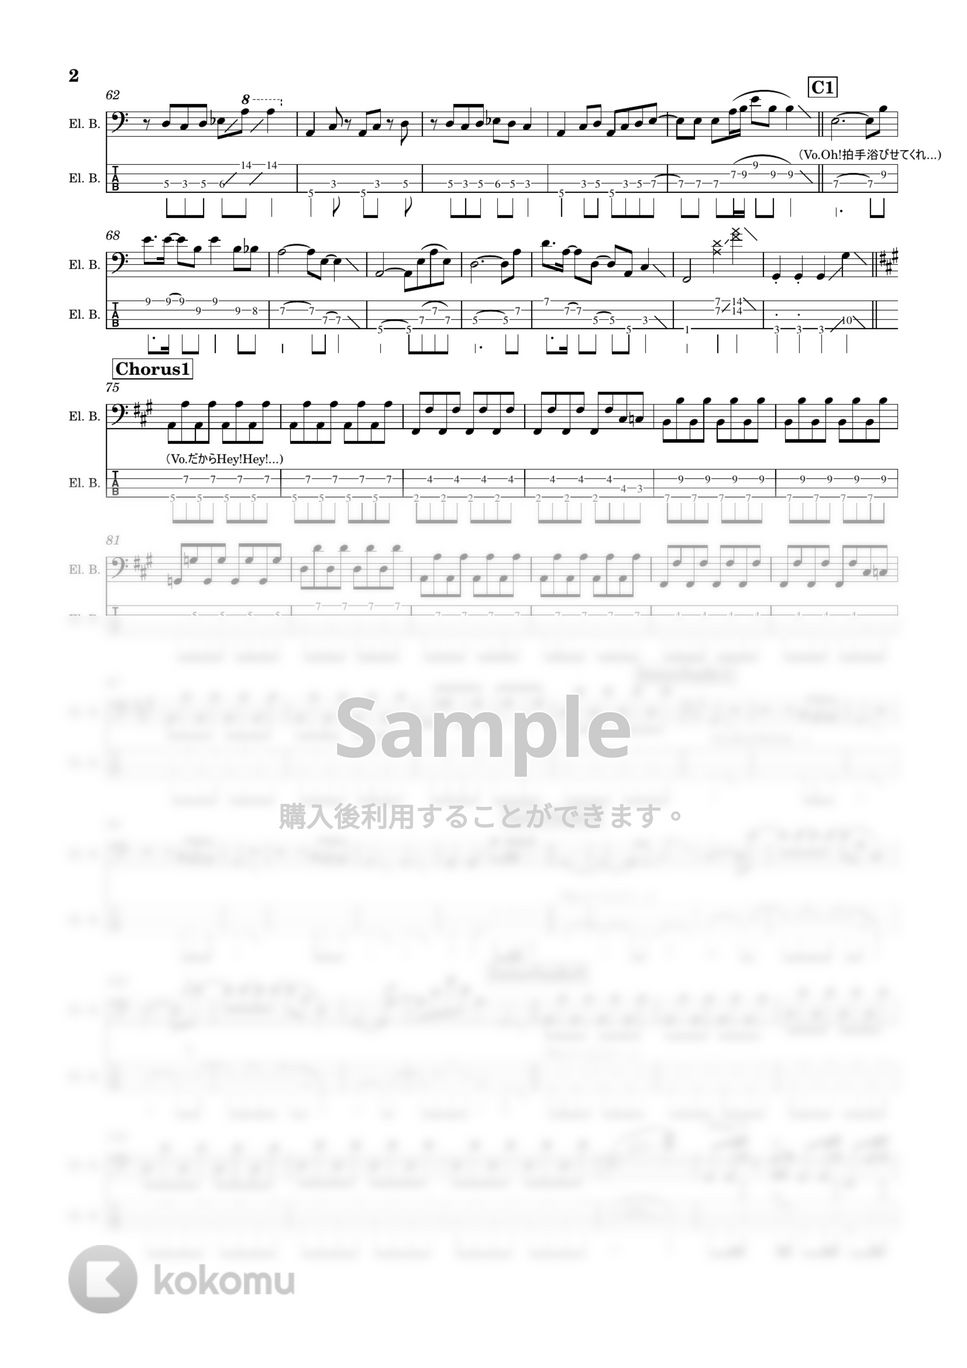 関ジャニ∞ - 勝手に仕上がれ (ベース/TAB/楽譜) by TARUO's_Bass_Score